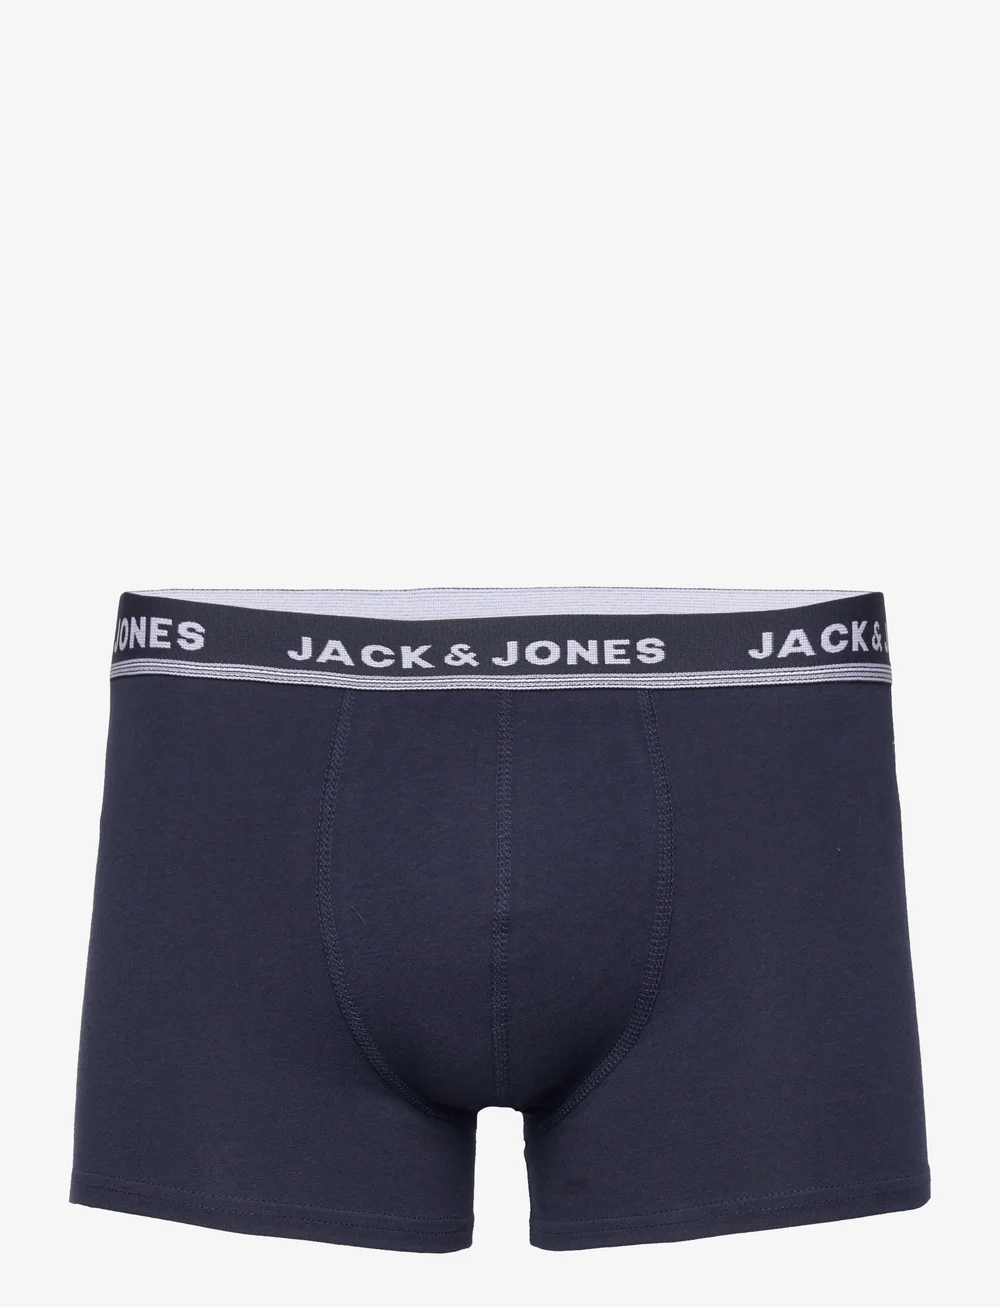 Jack & Jones Jaccolorful Kent Trunks 7 Pack – underpants – shop at